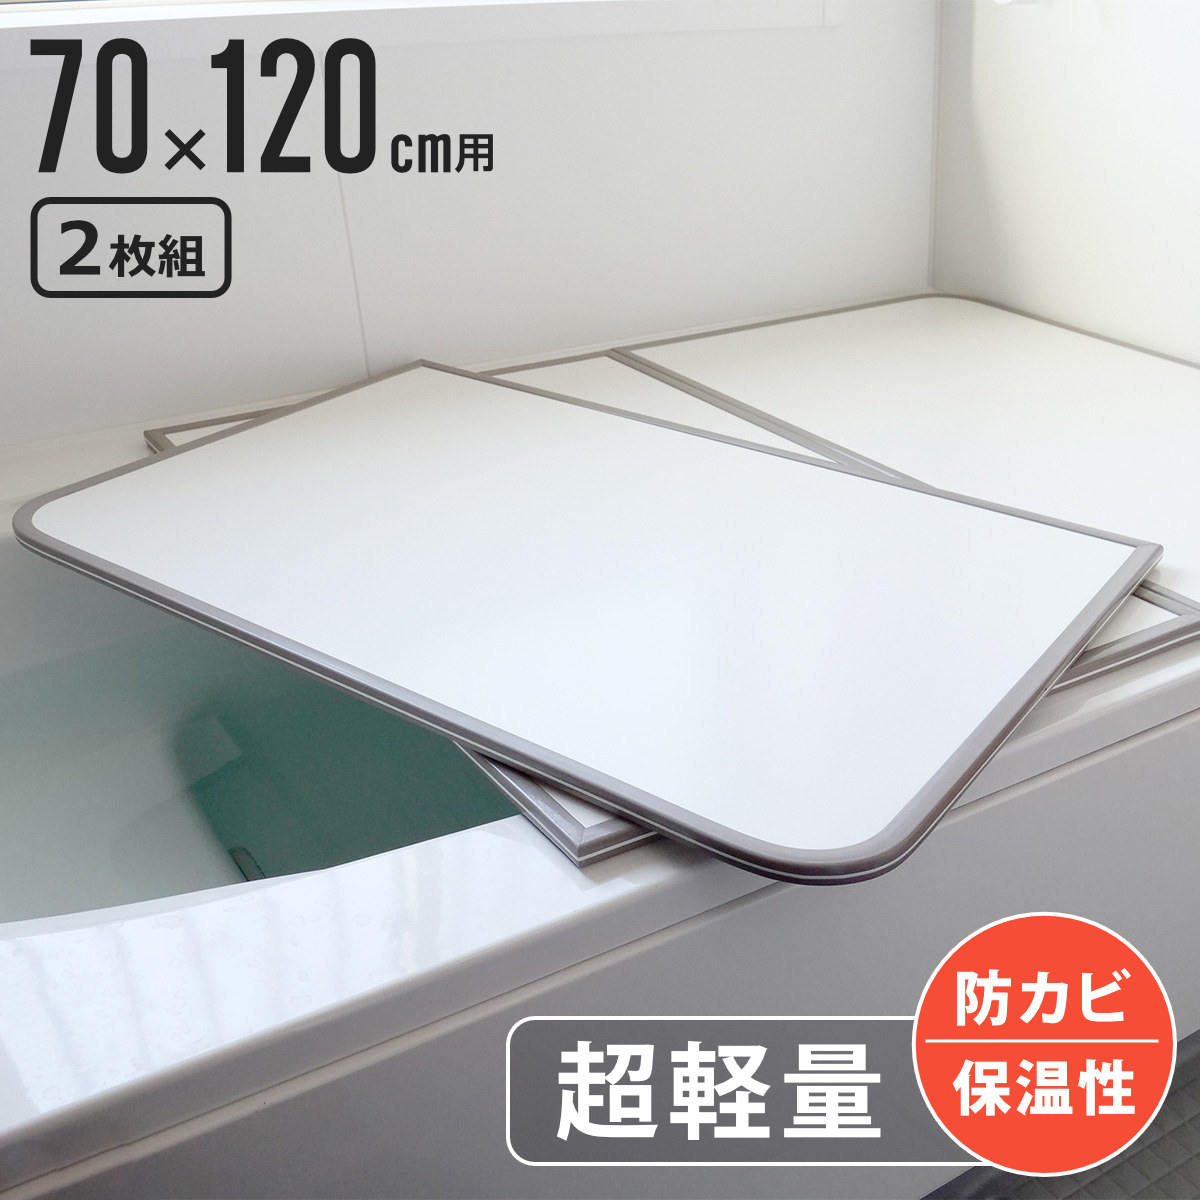  風呂ふた 組み合わせ 軽量 カビの生えにくい風呂ふた M-12 70×120cm 実寸68×118cm 2枚組